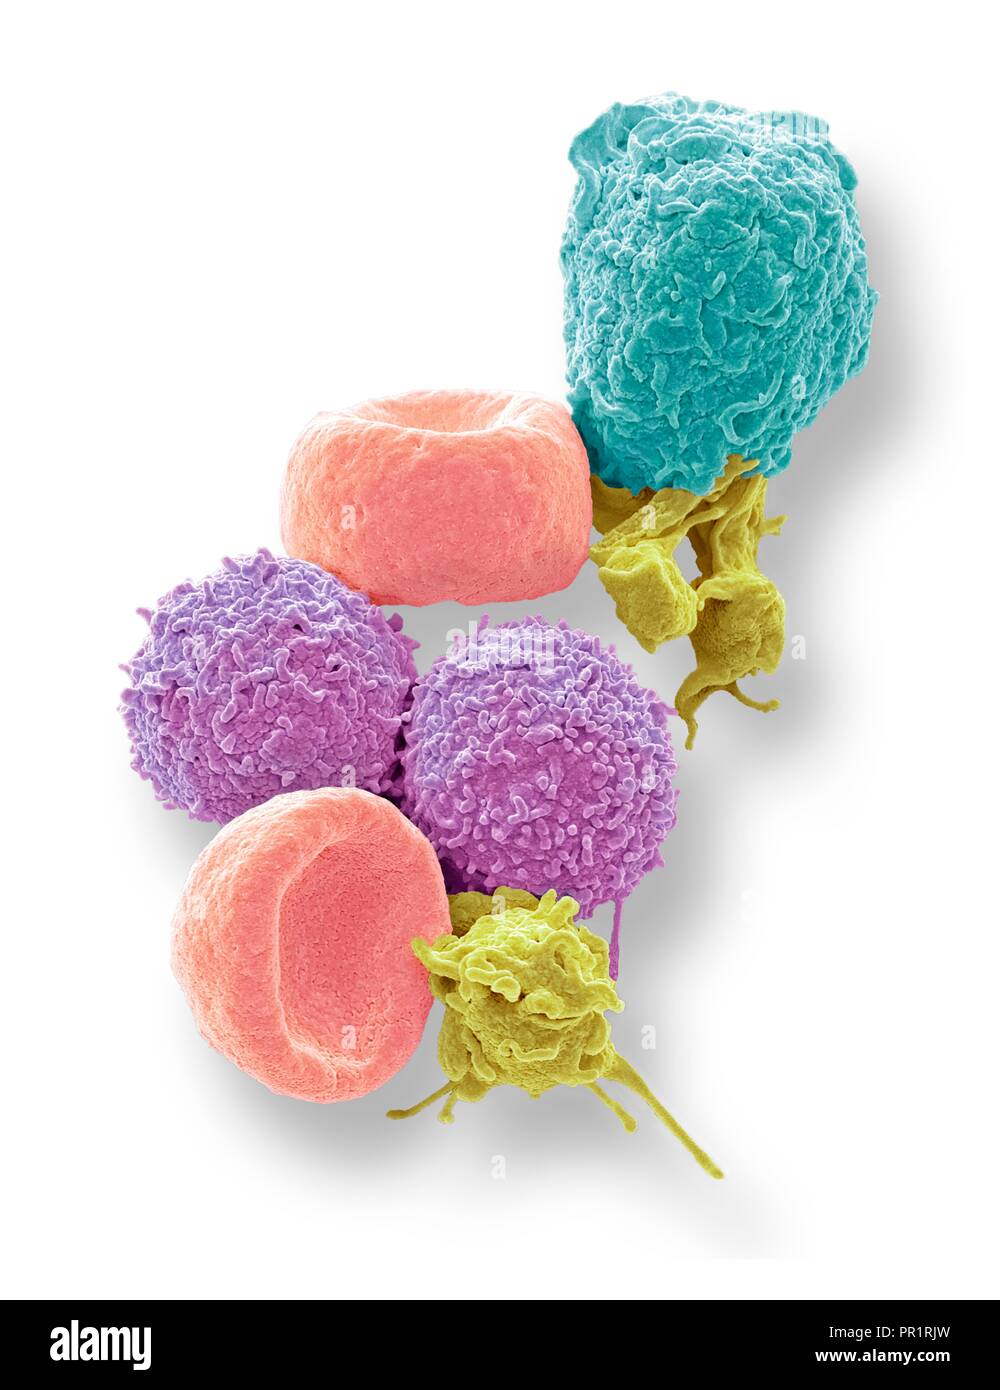 Blutzellen. Farbige Scanning Electron Micrograph (SEM) der menschlichen roten Blutkörperchen (Erythrozyten), weißen Blutkörperchen (Leukozyten, pink und Cyan) und der Blutplättchen (Thrombozyten, gelb). Die Scheibenförmigen, biconcave Erythrozyten transportieren Sauerstoff zu den Zellen des Körpers und Kohlendioxid in die Lunge zu entfernen. Leukozyten sind Teil des Immunsystems, die Verteidigung des Körpers gegen eine Infektion durch die Aufnahme von Pathogenen durch Phagozytose oder durch die Produktion von Antikörpern. Vergrößerung: x5000, wenn 10 Zentimeter hohe gedruckt. Stockfoto